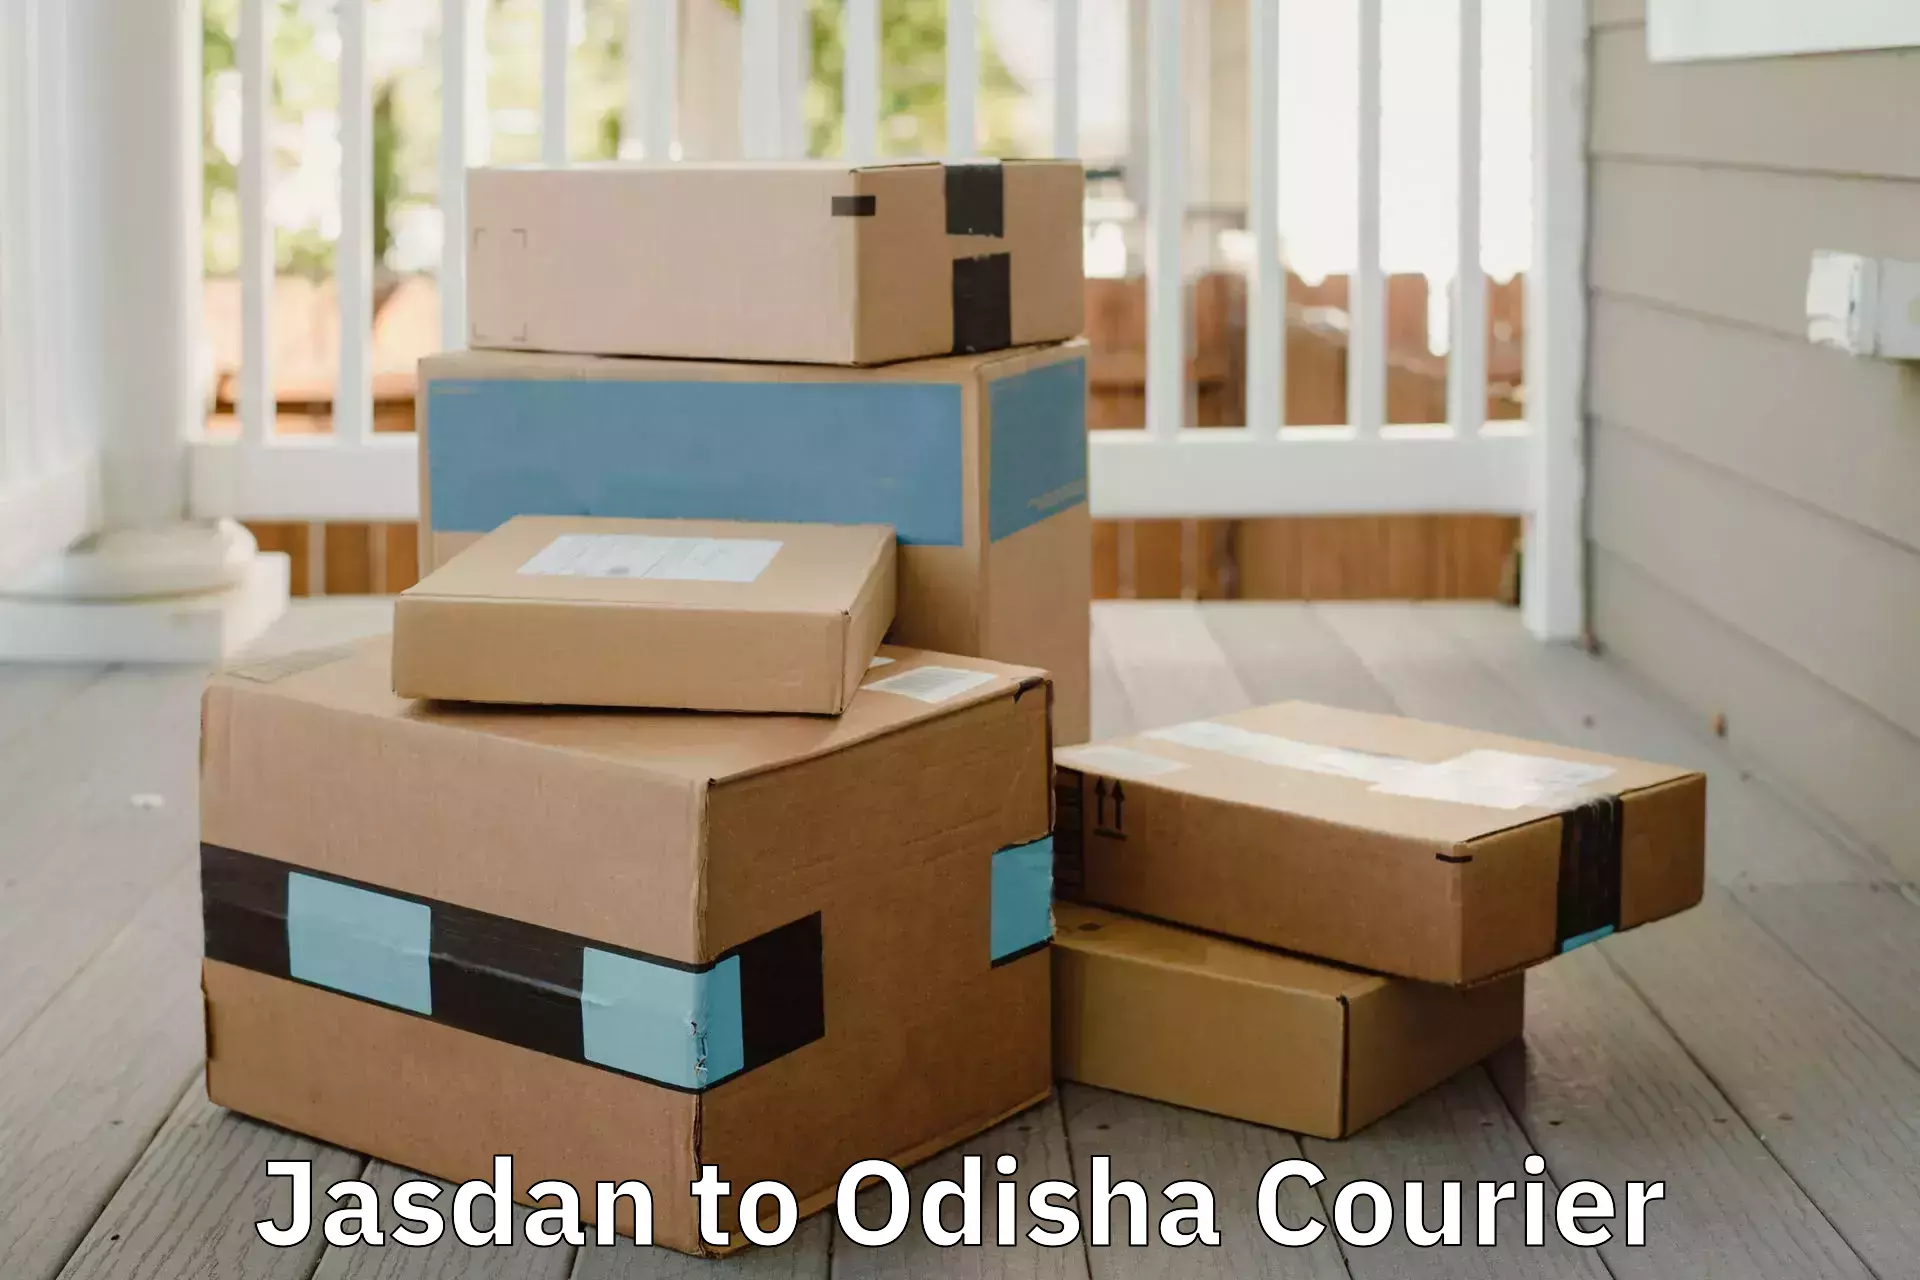 Furniture transport experts Jasdan to Pappadahandi